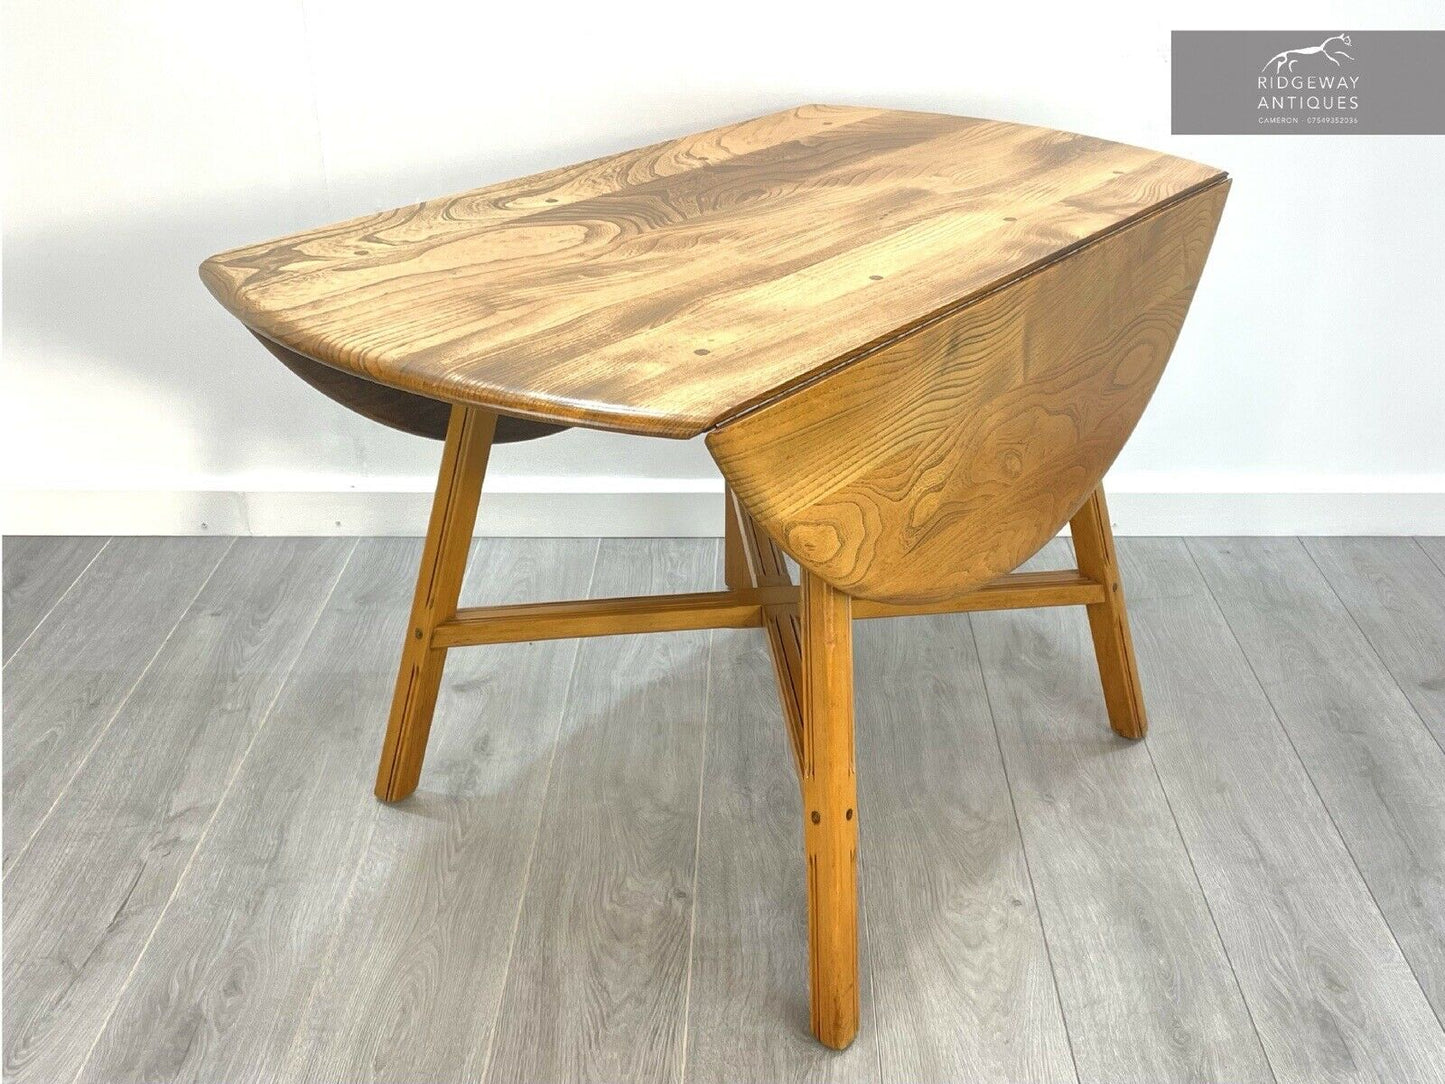 Ercol Model 377, Vintage Elm Drop Leaf Dining Table